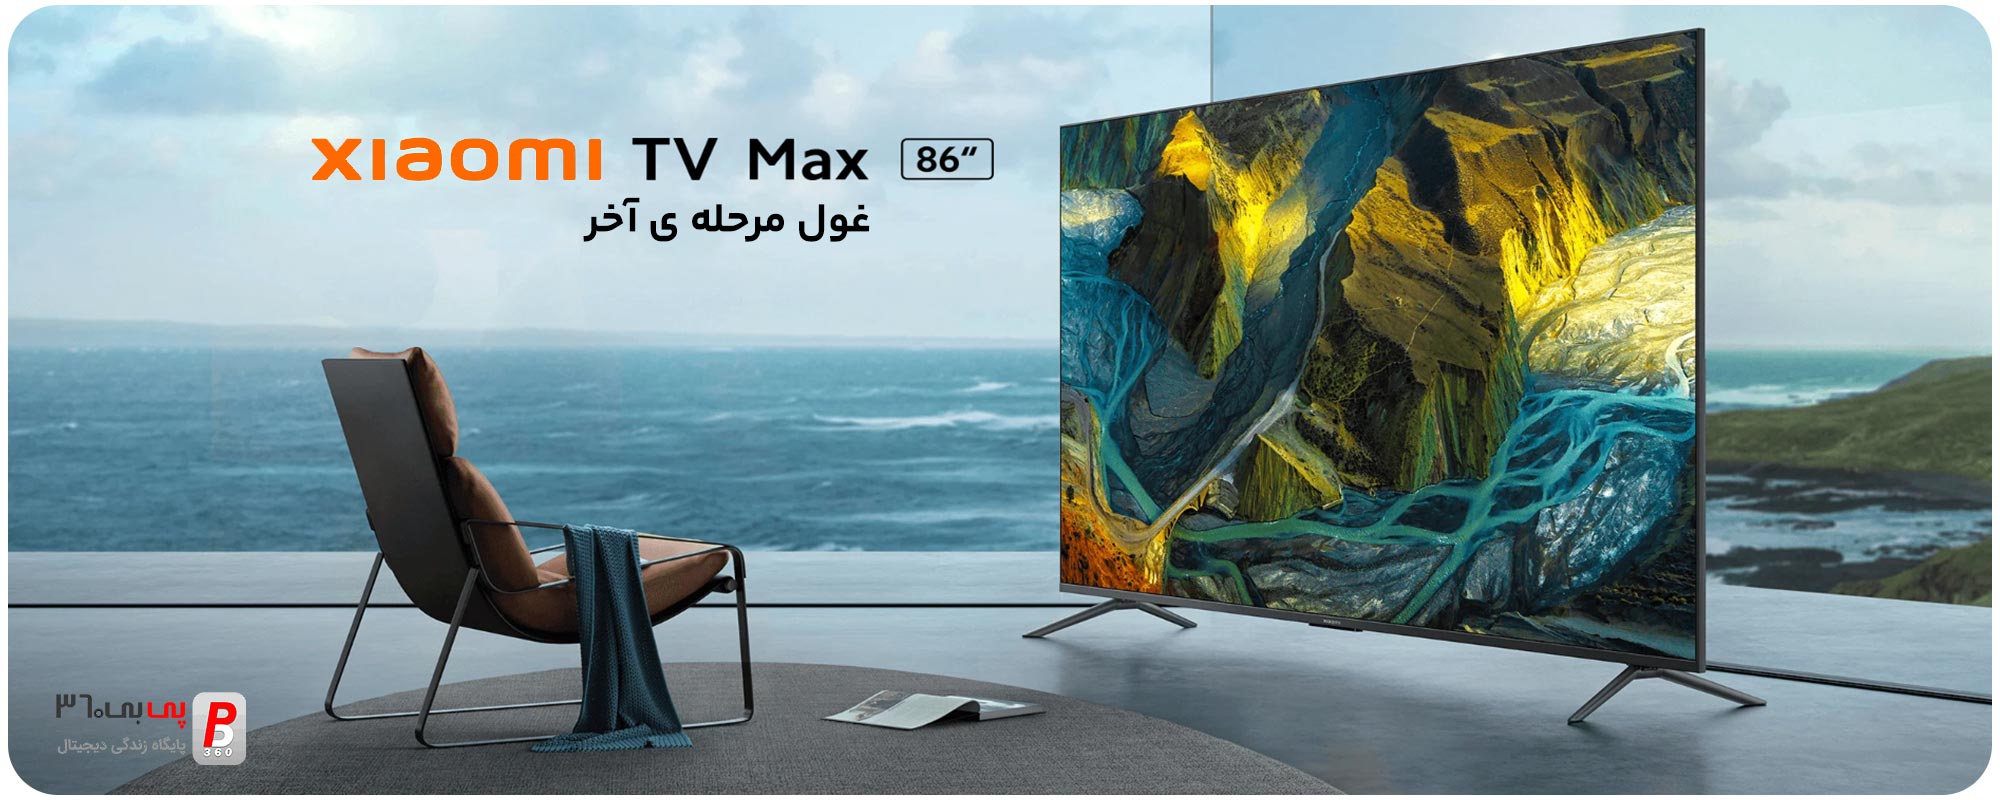 قیمت، مشخصات و بررسی تلویزیون هوشمند شیائومی مدل “Xiaomi TV MAX 86 گلوبال